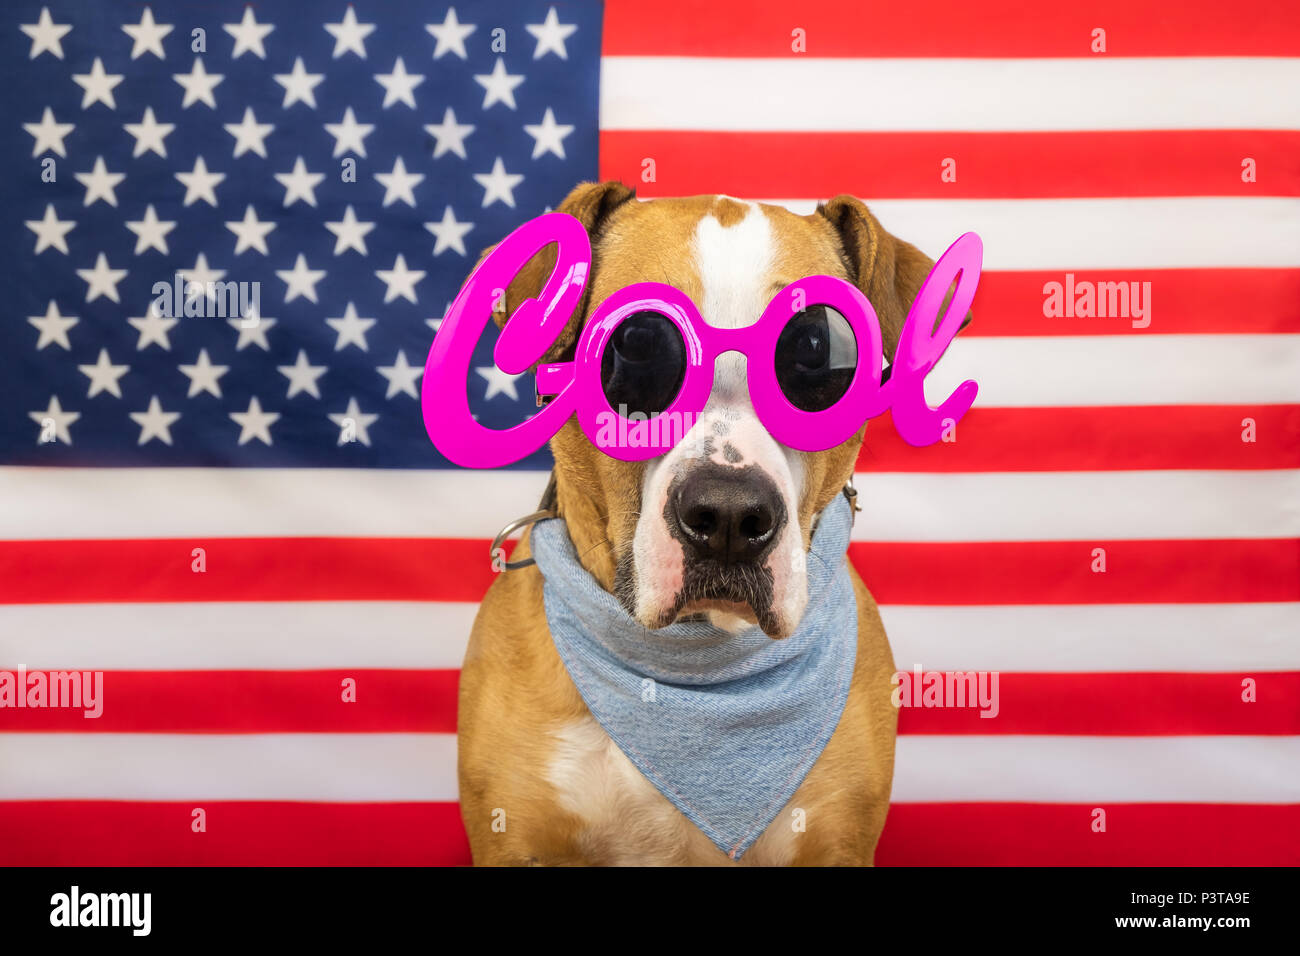 Le jour de l'indépendance américaine, concept avec Staffordshire terrier dog et stars and stripes flag en studio. Joyeux et heureux pitbull chien dans 'cool' masqu Banque D'Images